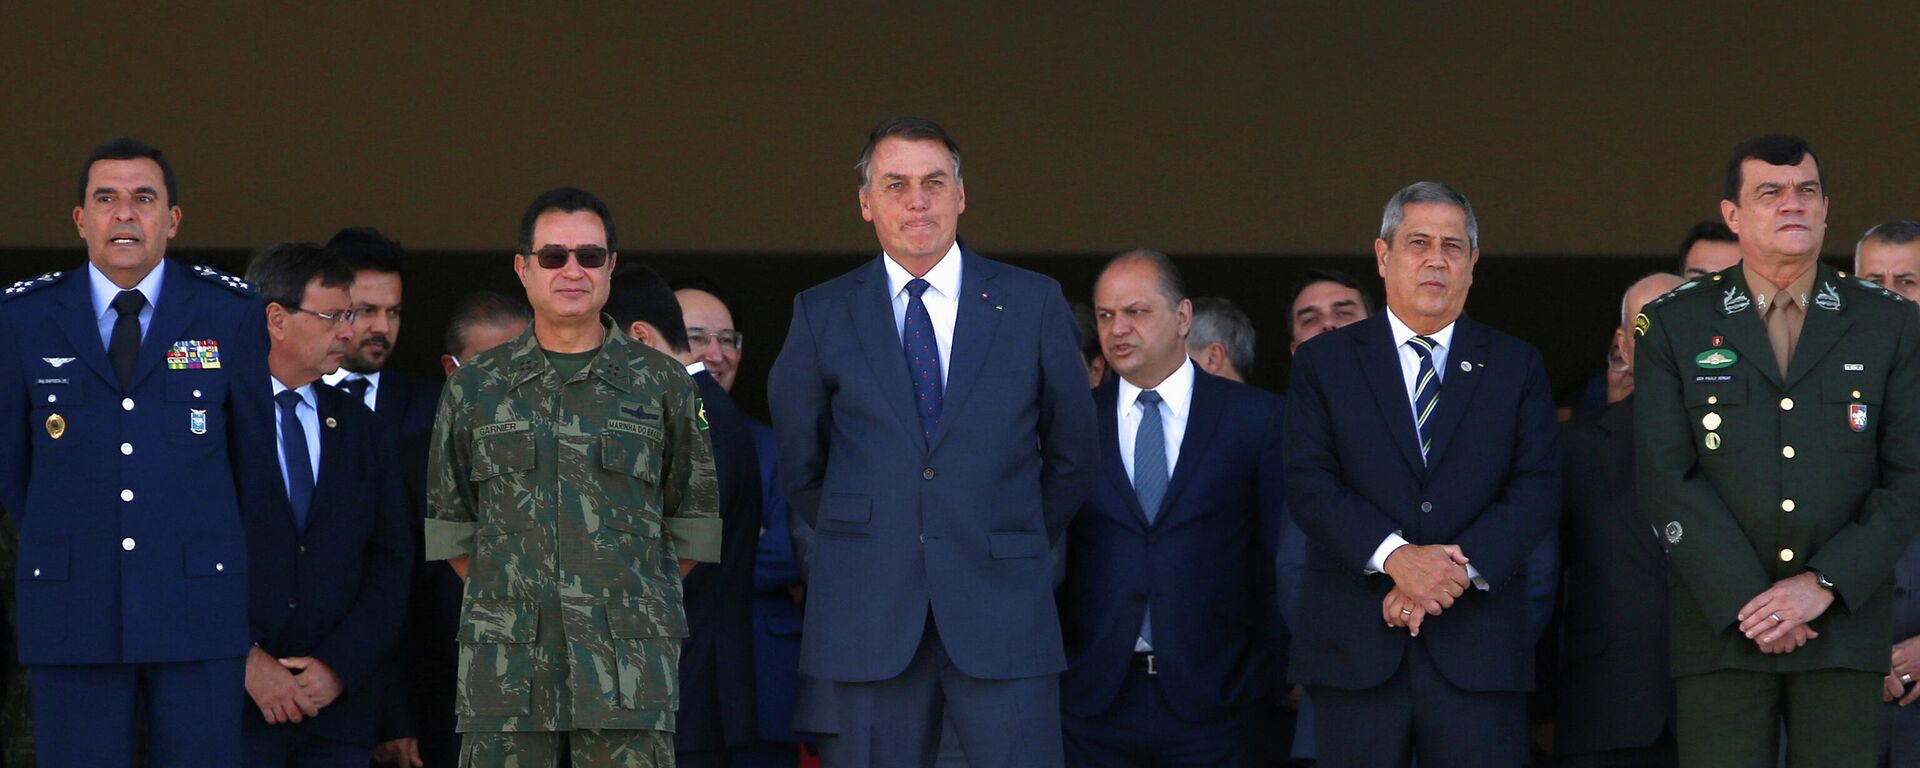 El presidente de Brasil, Jair Bolsonaro, asiste a un desfile militar, Brasilia, Brasil, el 10 de agosto de 2021   - Sputnik Mundo, 1920, 10.08.2021